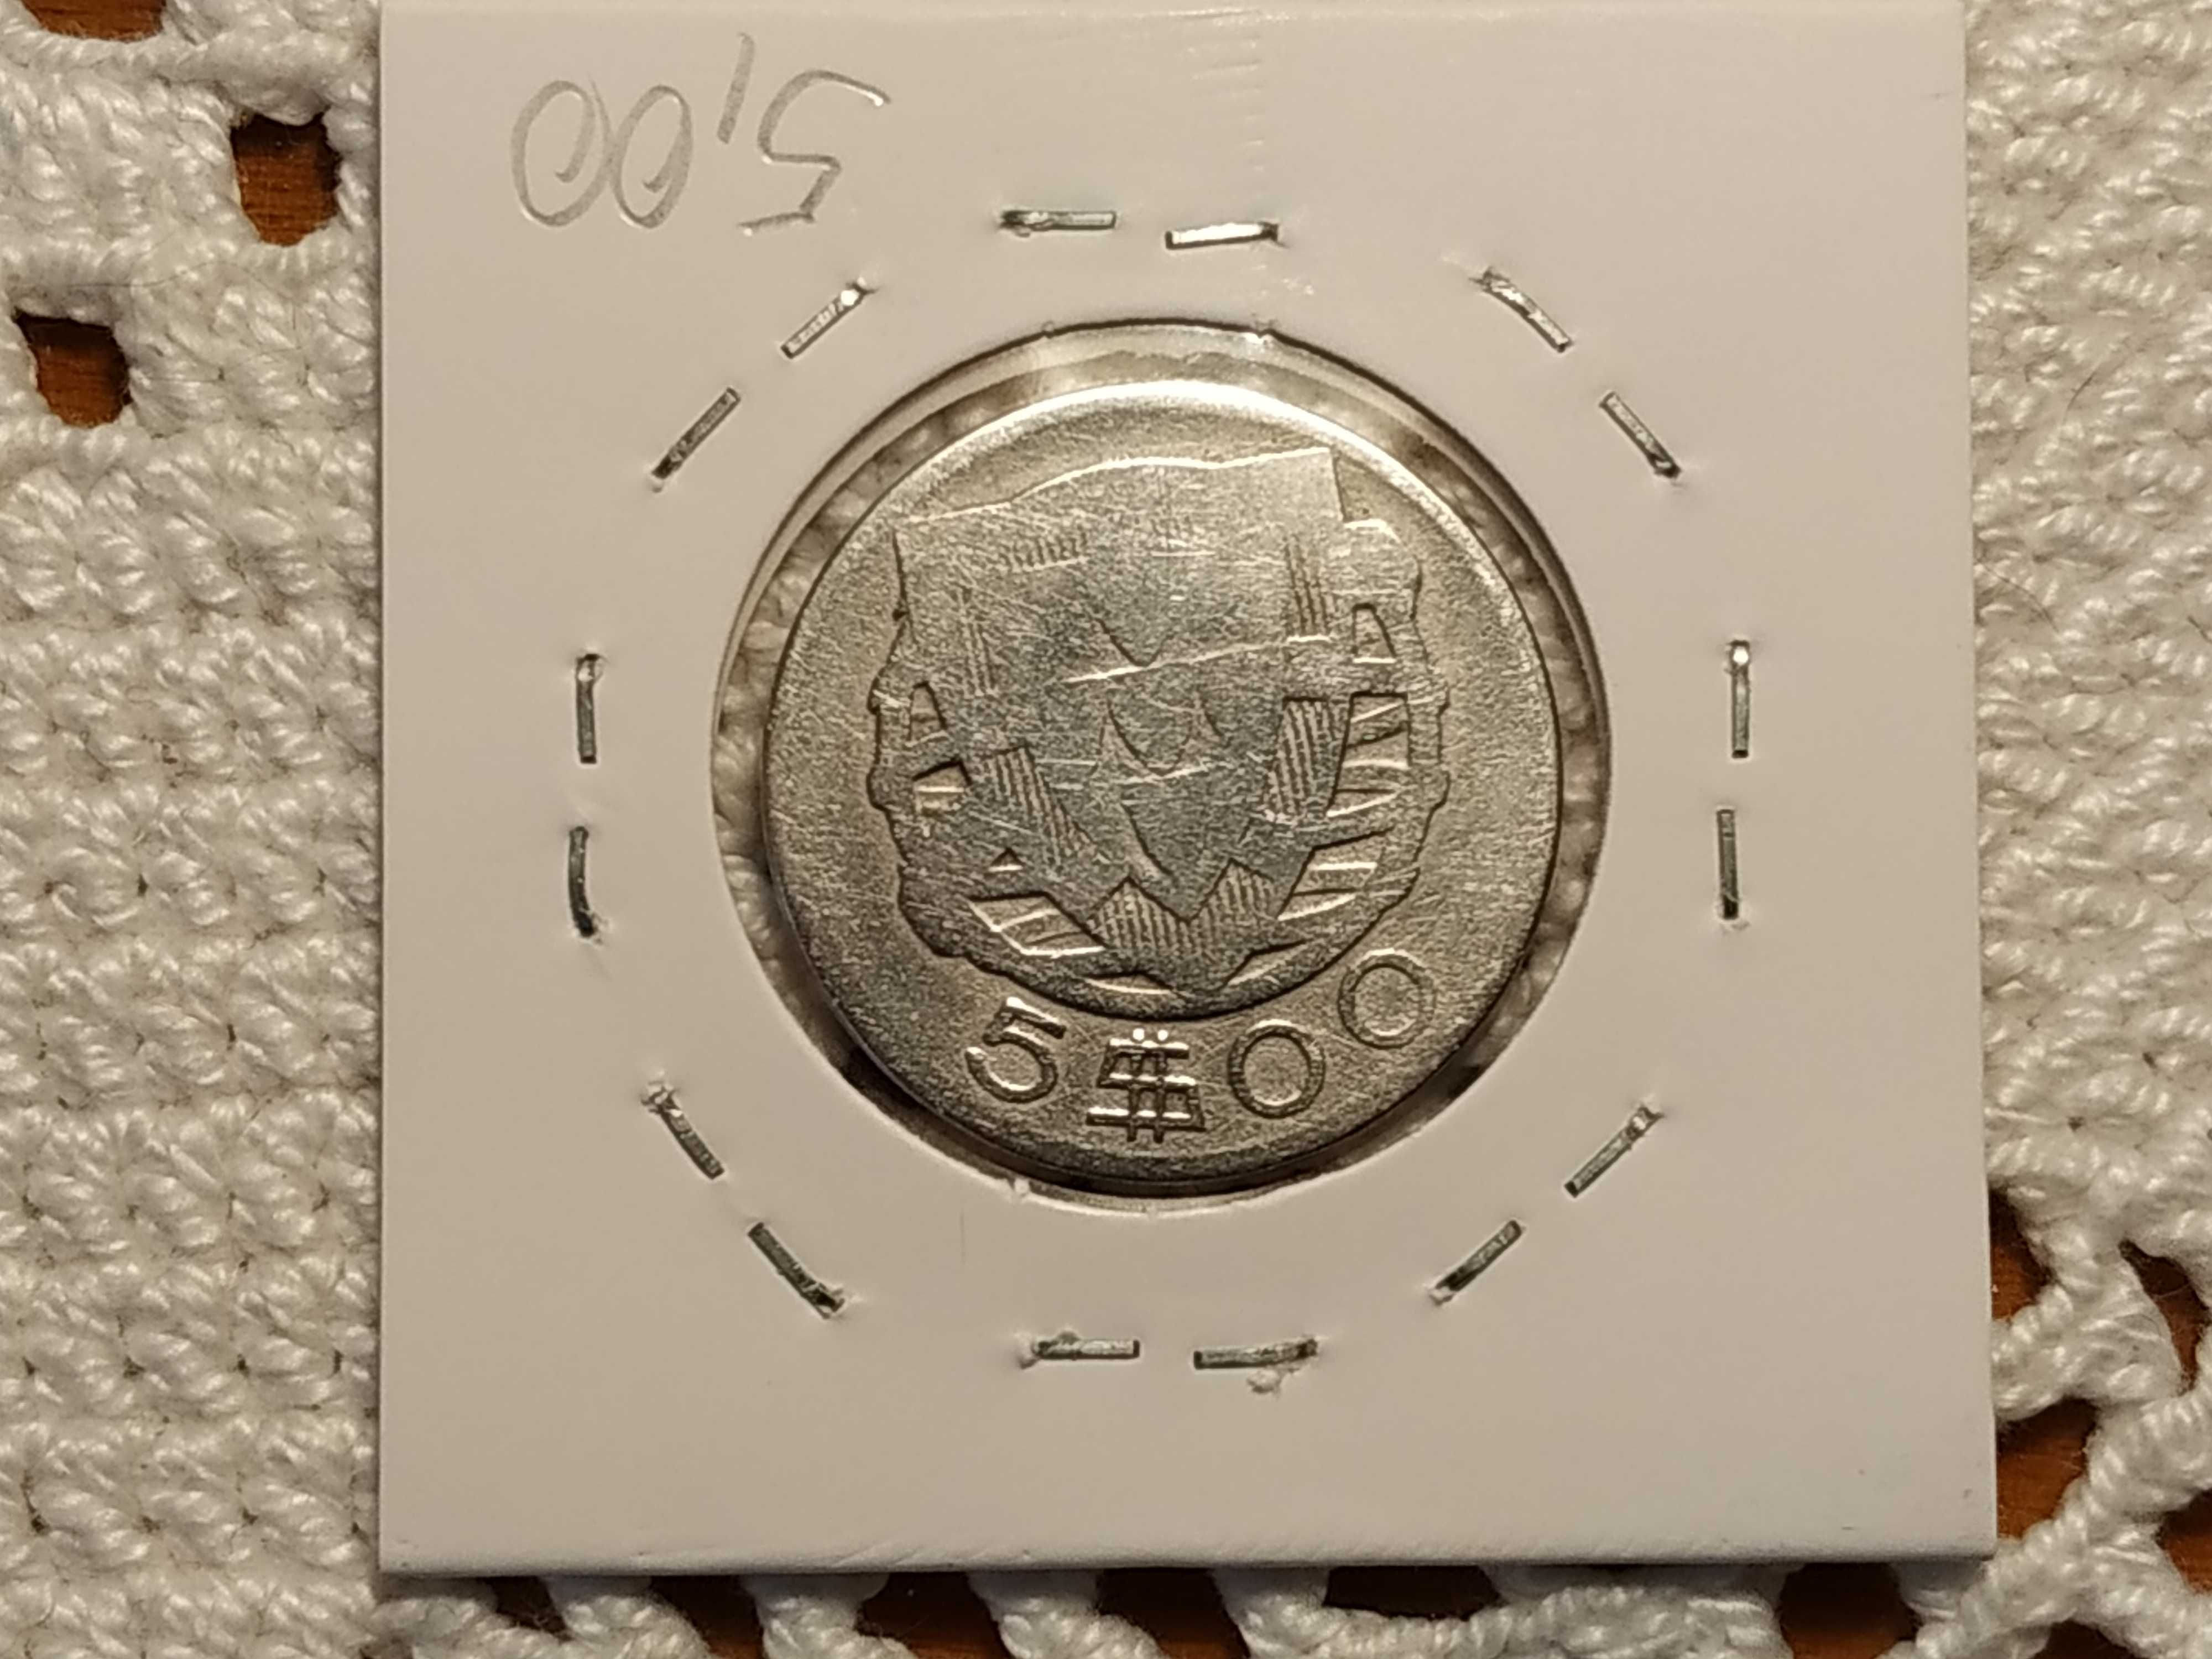 Portugal - moeda em prata de 5 escudos de 1934 (G-)